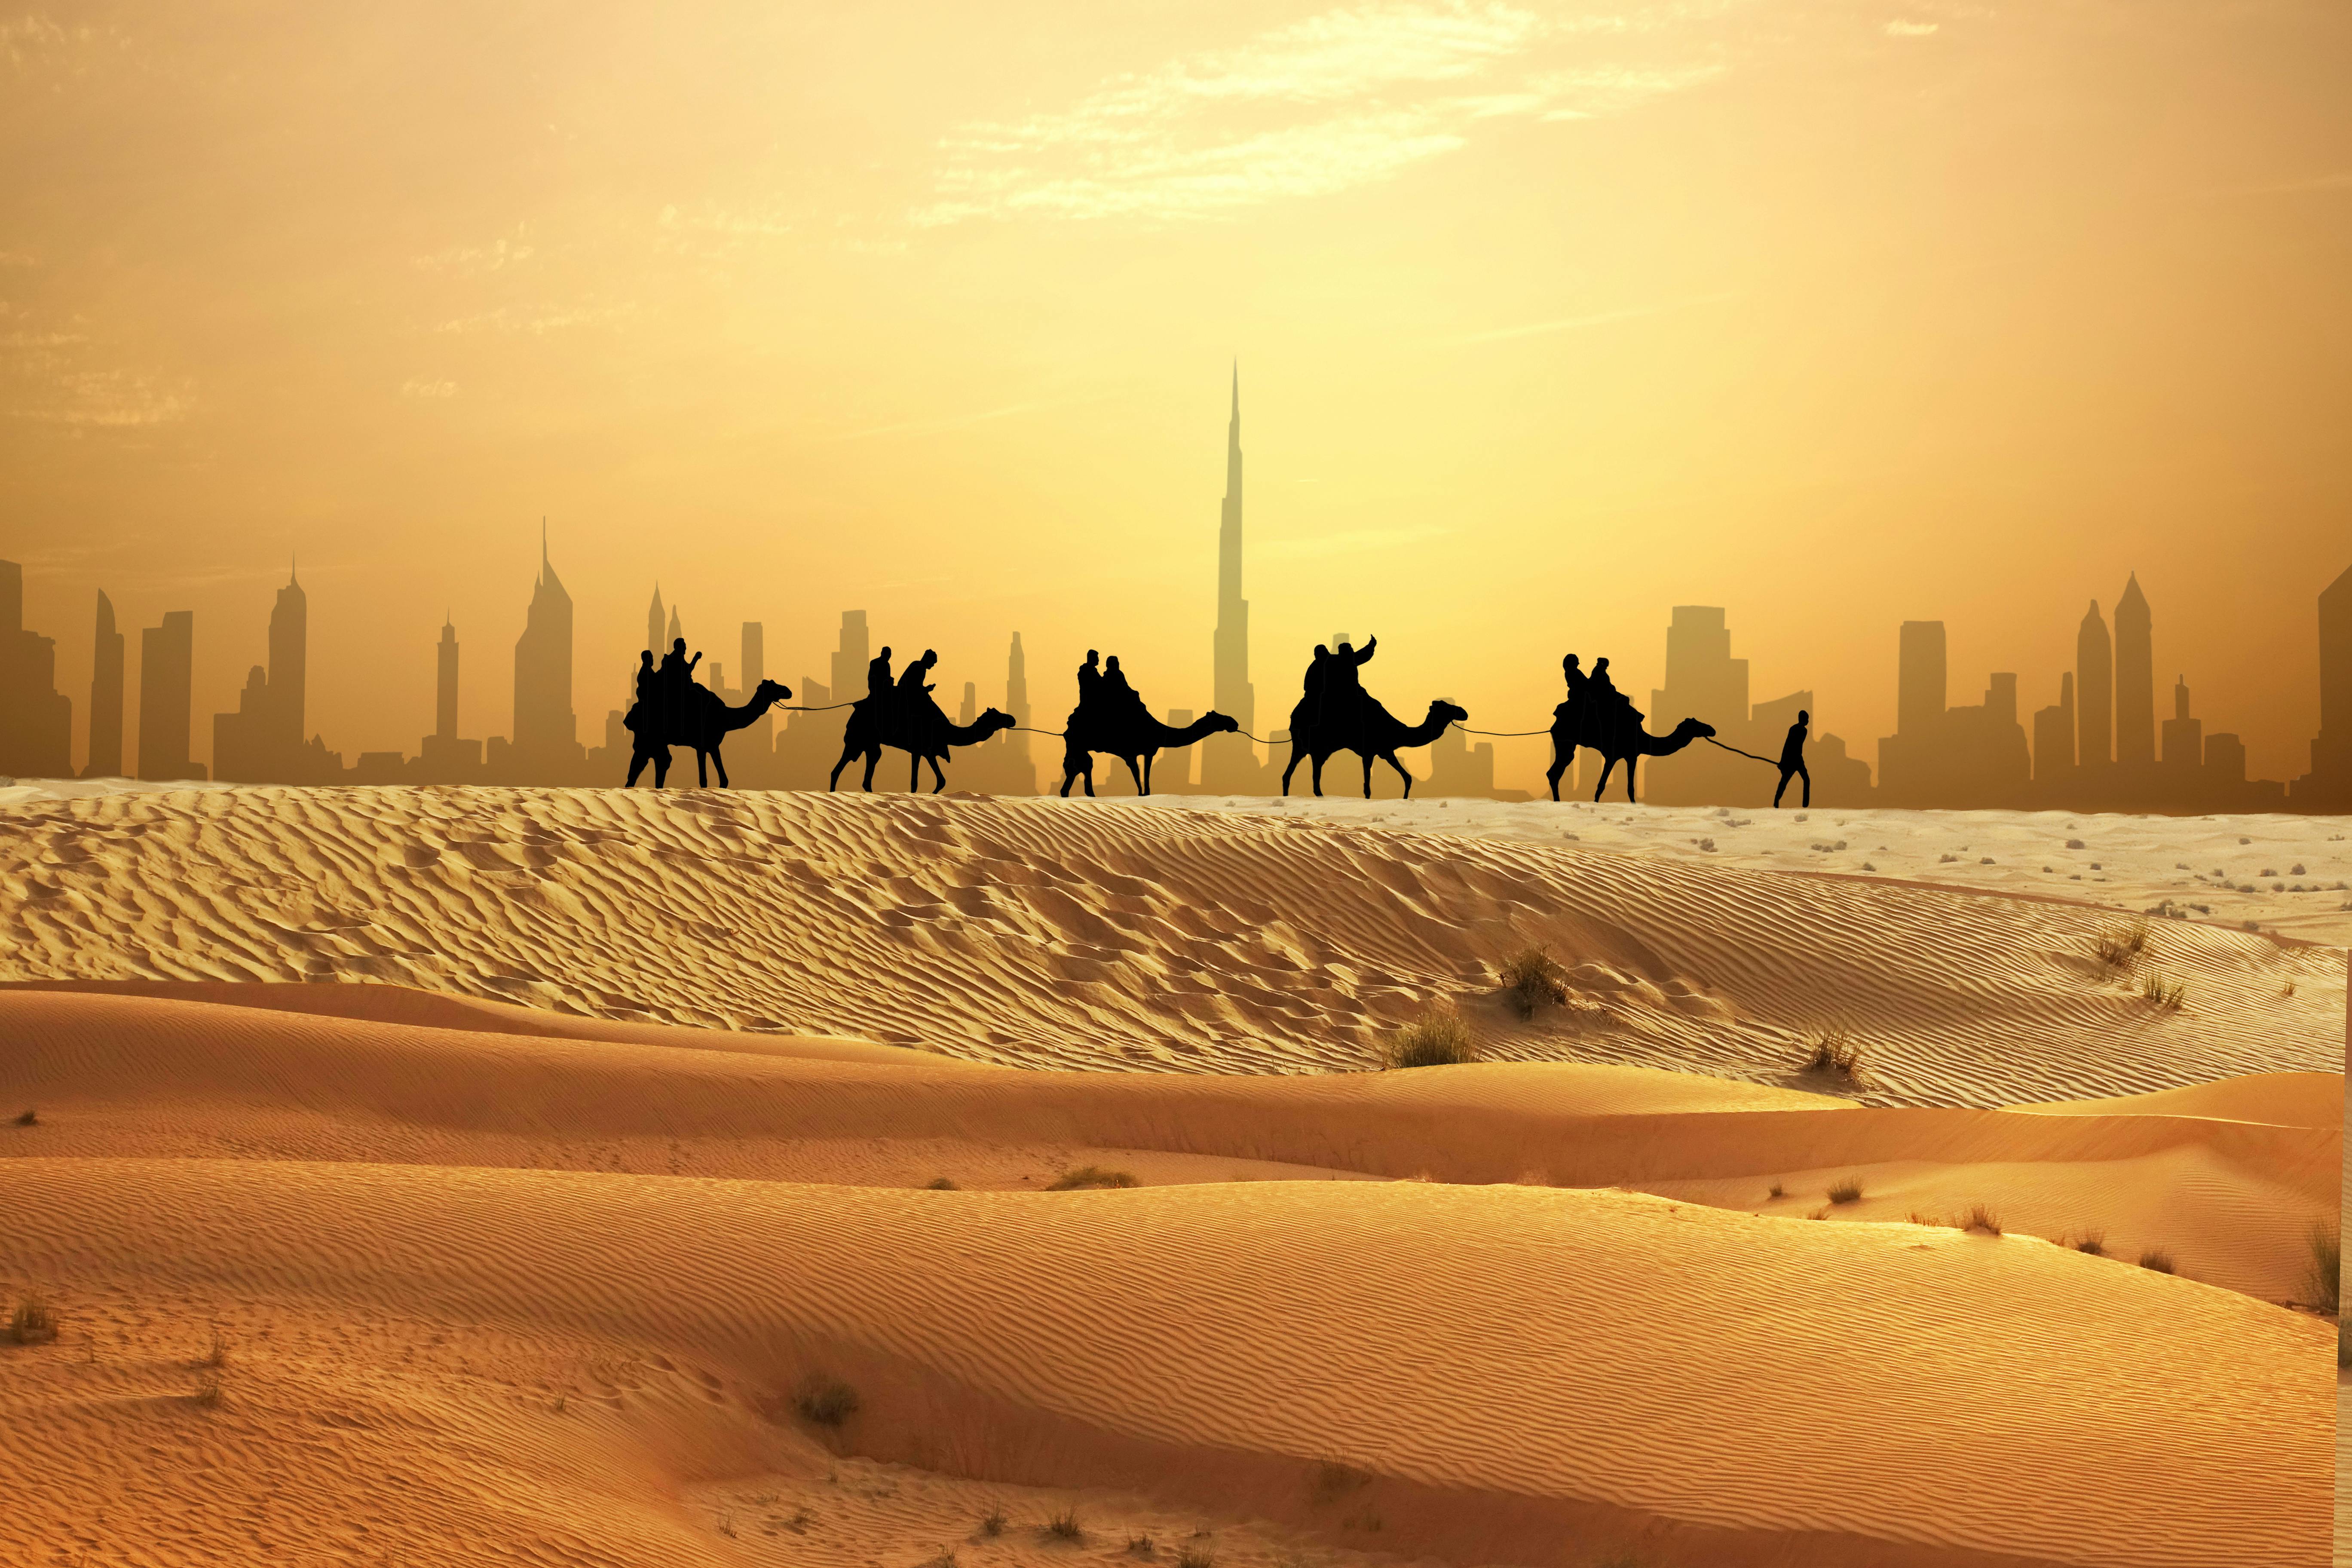 Excursão de dia inteiro para pequenos grupos em Dubai e safári noturno no deserto